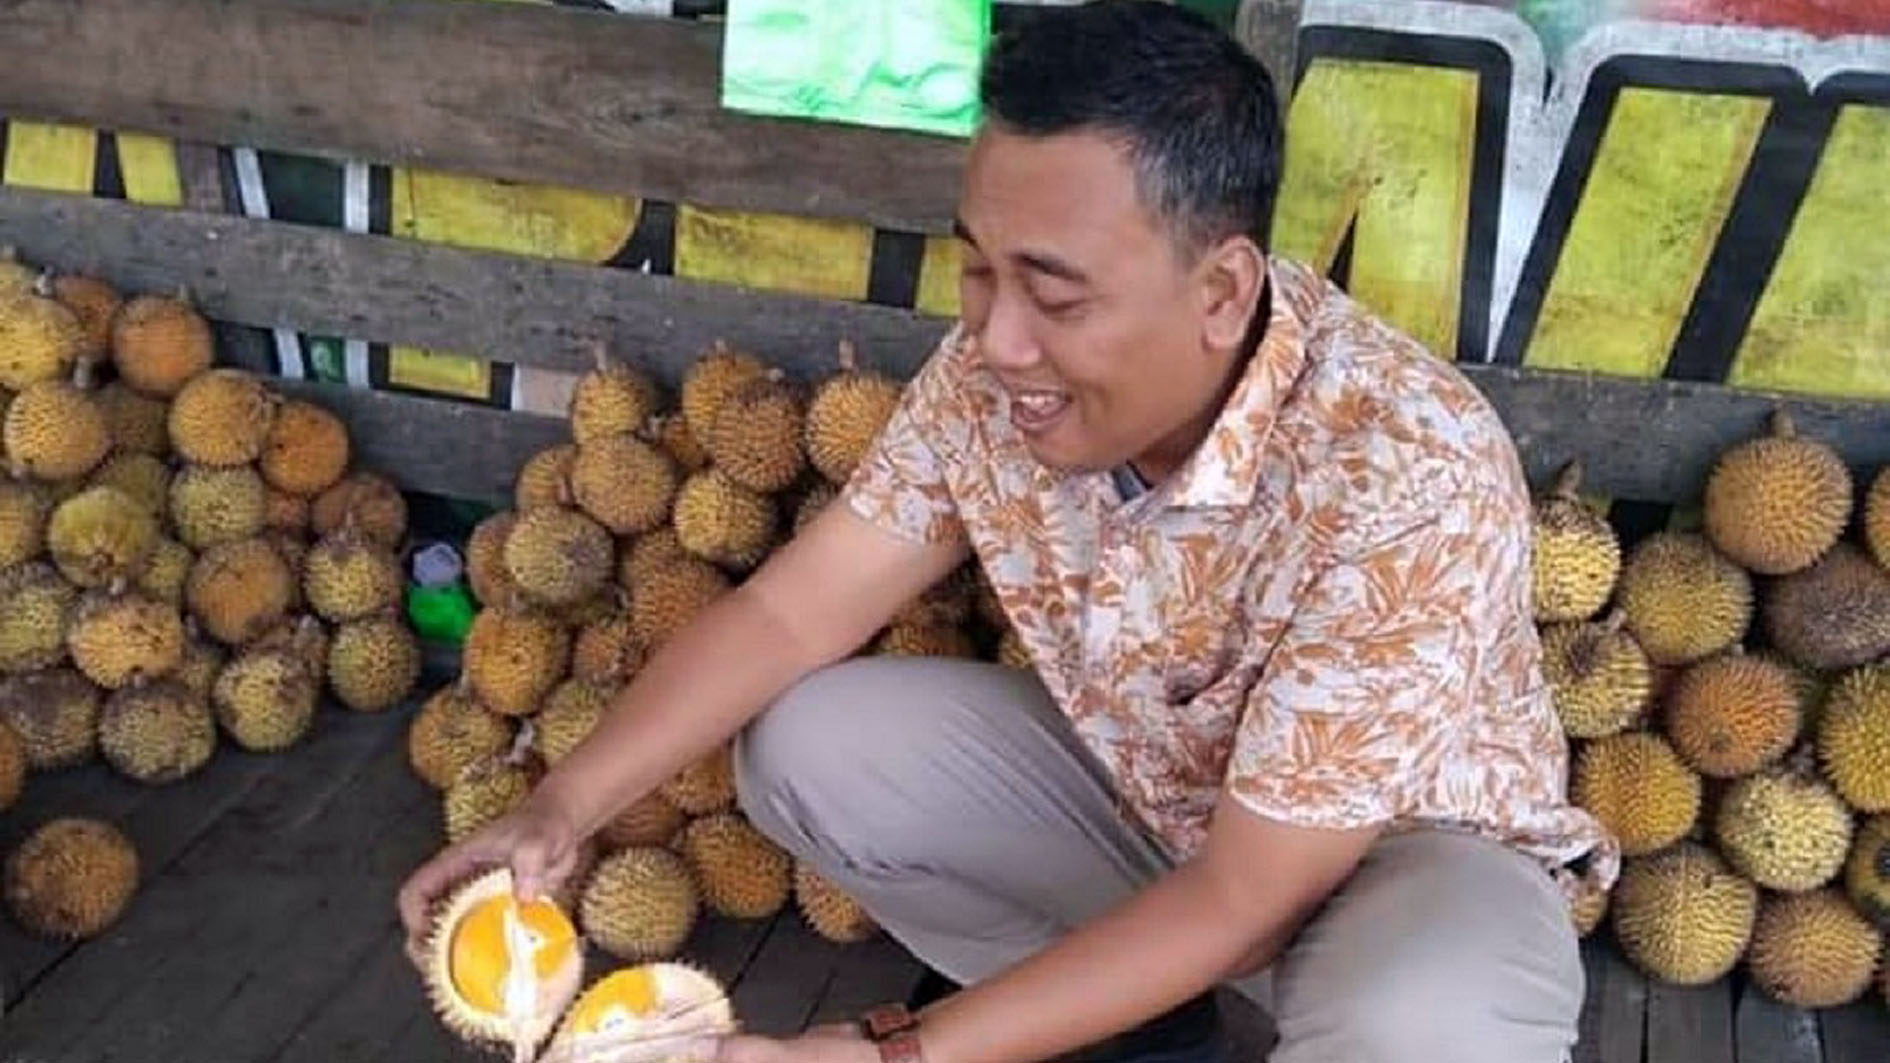 Sudah Musim Durian, ini 5 Kabupaten Terbanyak Produksi Durian di Sumatera Selatan, Lubuklinggau Masuk Gak Ya